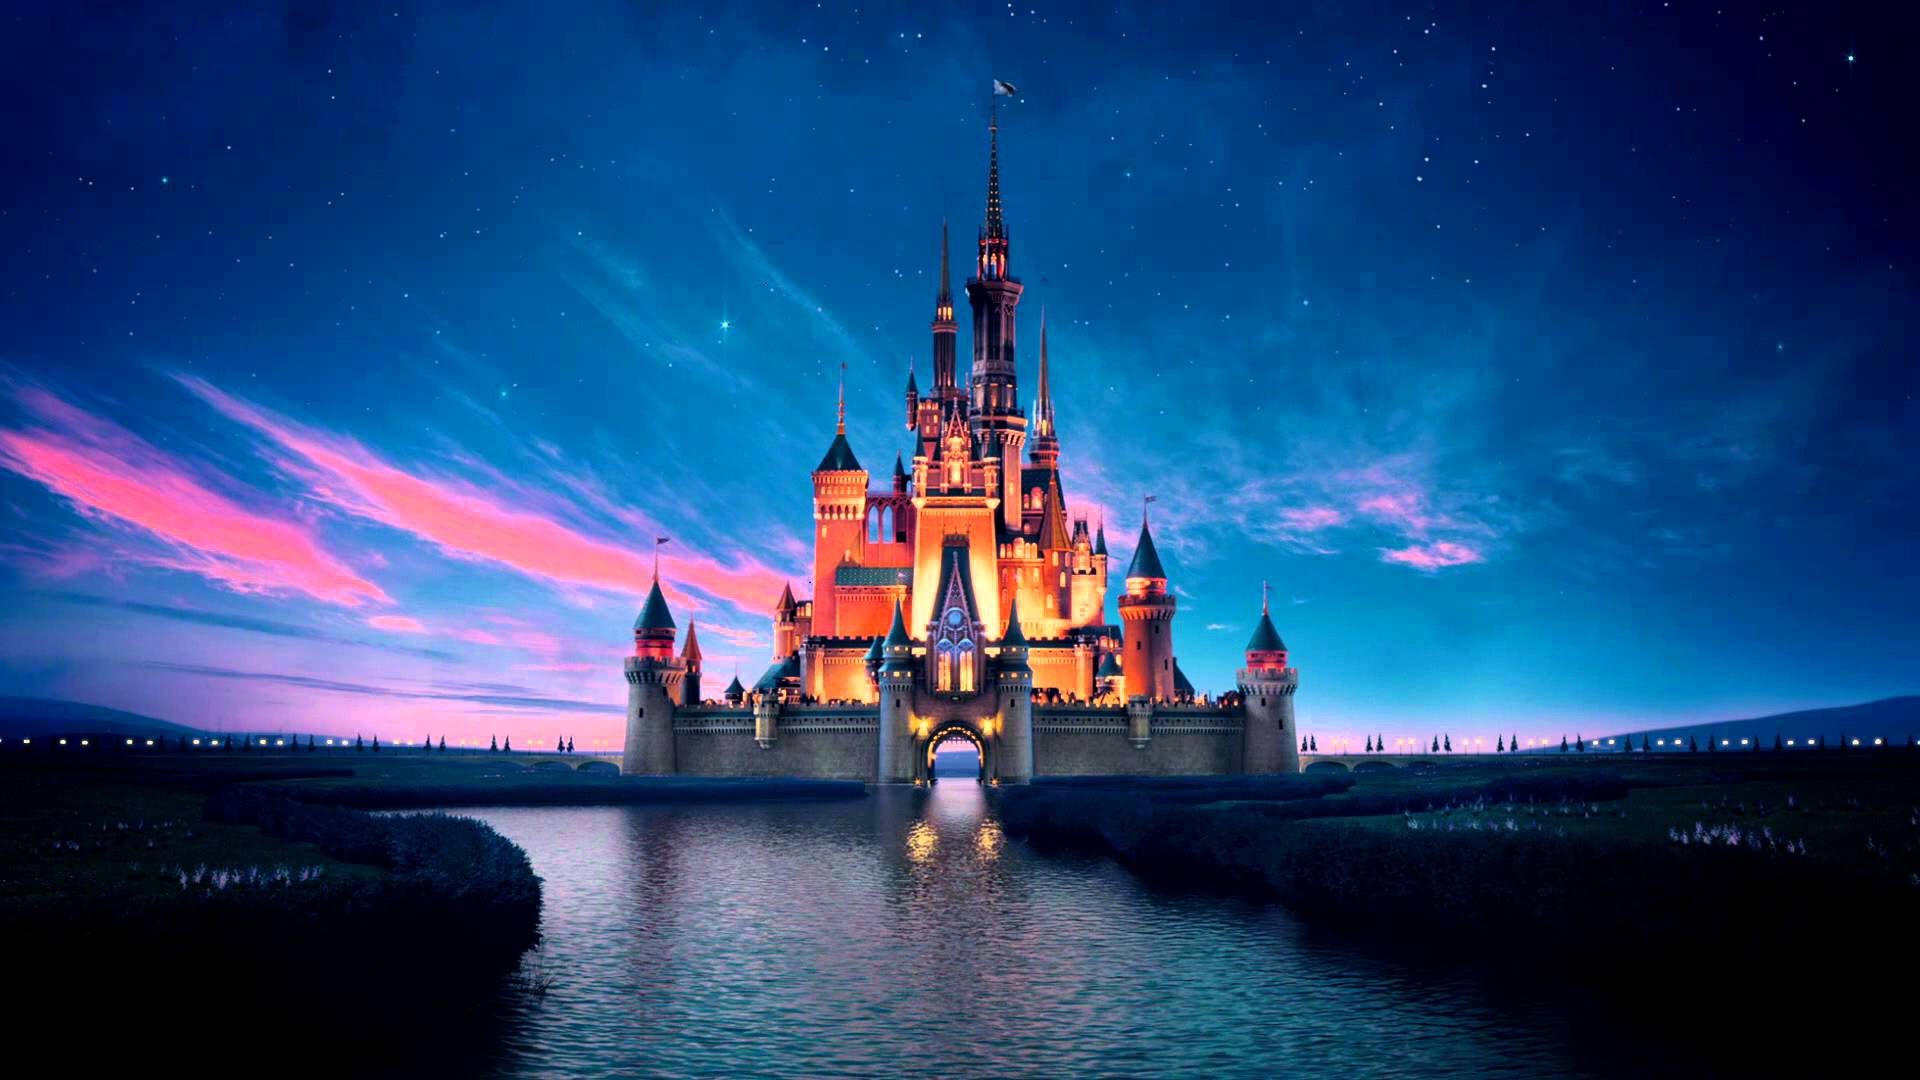 Cảm nhận sự dễ chịu và lãng mạn từ Disney Castle khi xem bức ảnh này. Thành phố cổ kính nằm ngay trước mắt bạn, với tòa lâu đài cổ kính và sự nổi bật của ánh sáng ban đêm. Hãy truy cập để ngắm nhìn thôi.